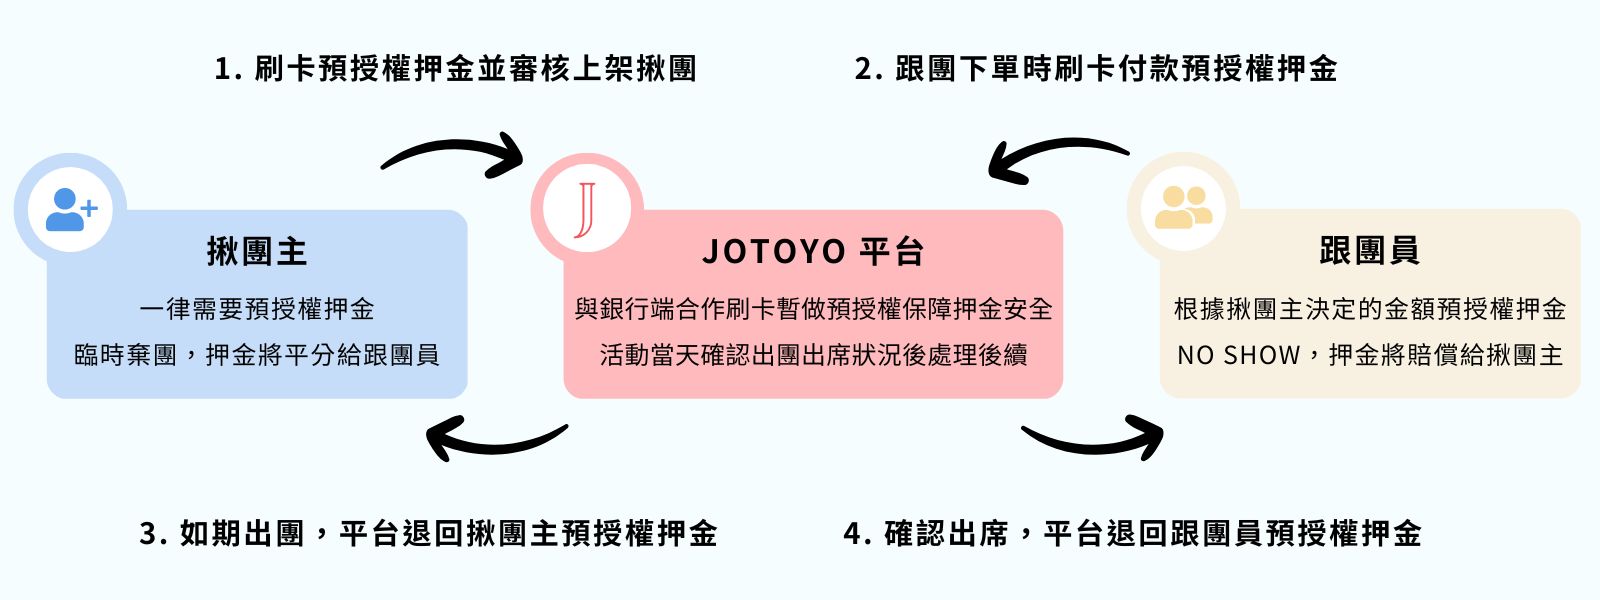 Jotoyo 揪團yo 美食團